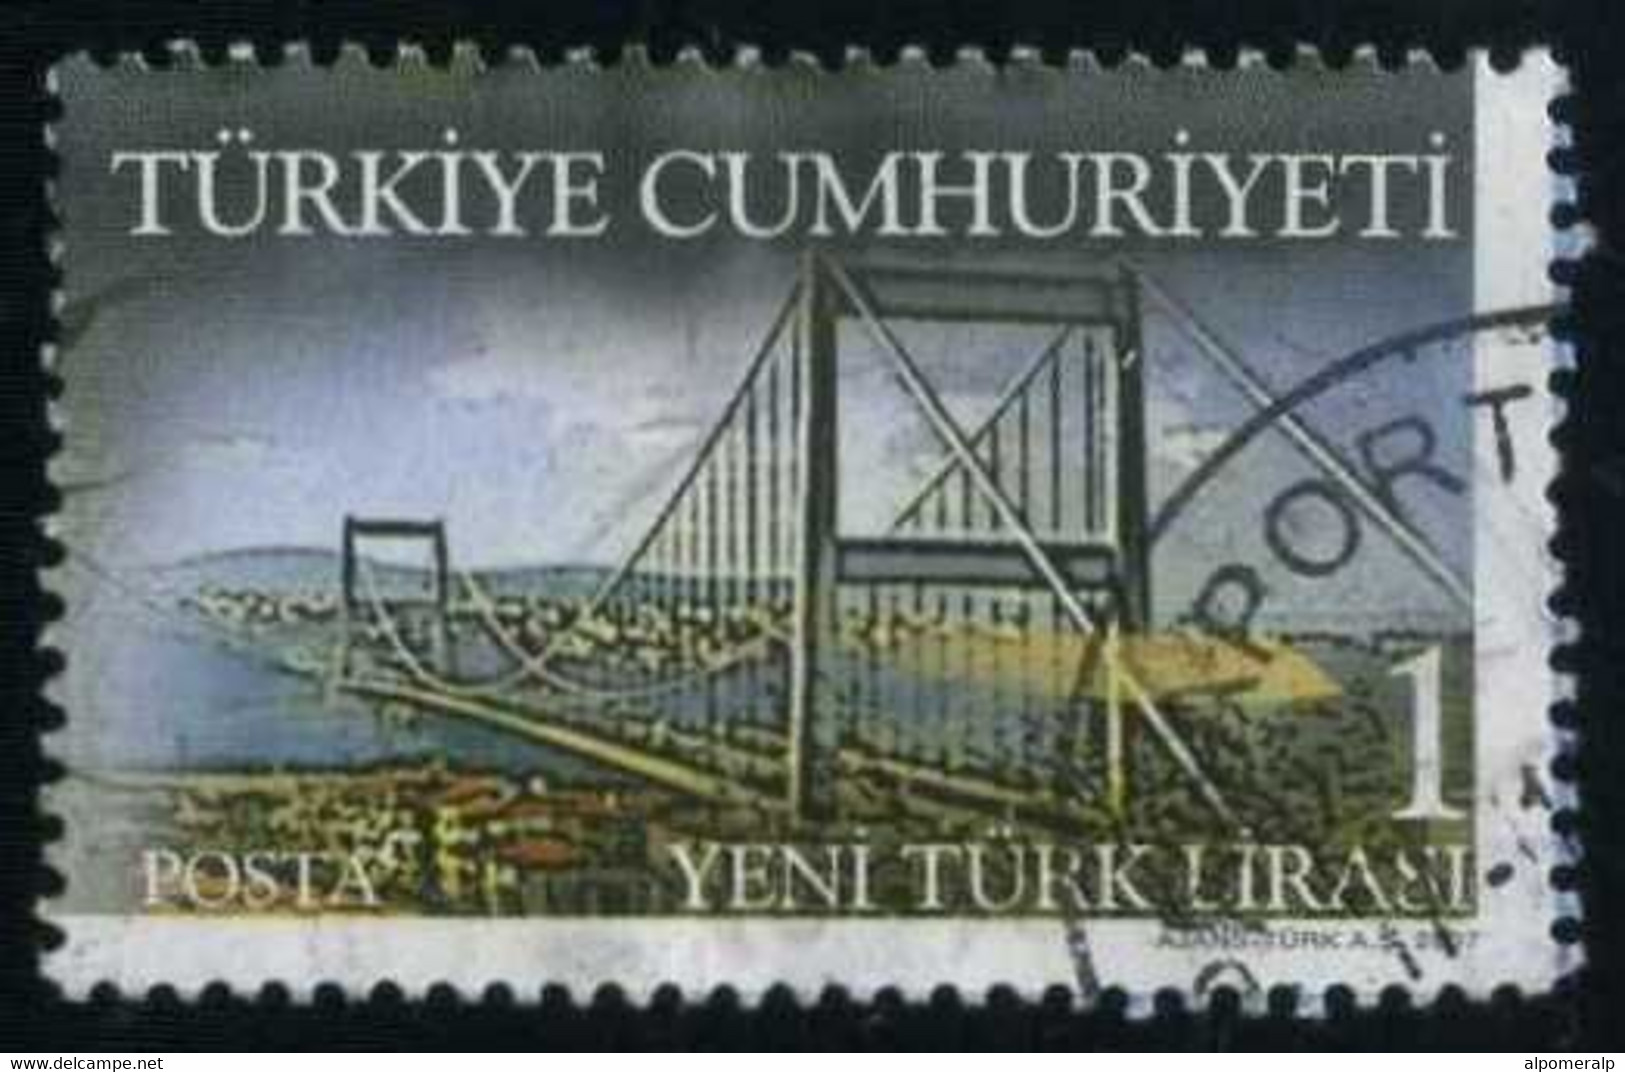 Türkiye 2007 Mi 3618 Bosphorus Bridge | Balkanfila Stamp Exhibition - Usati